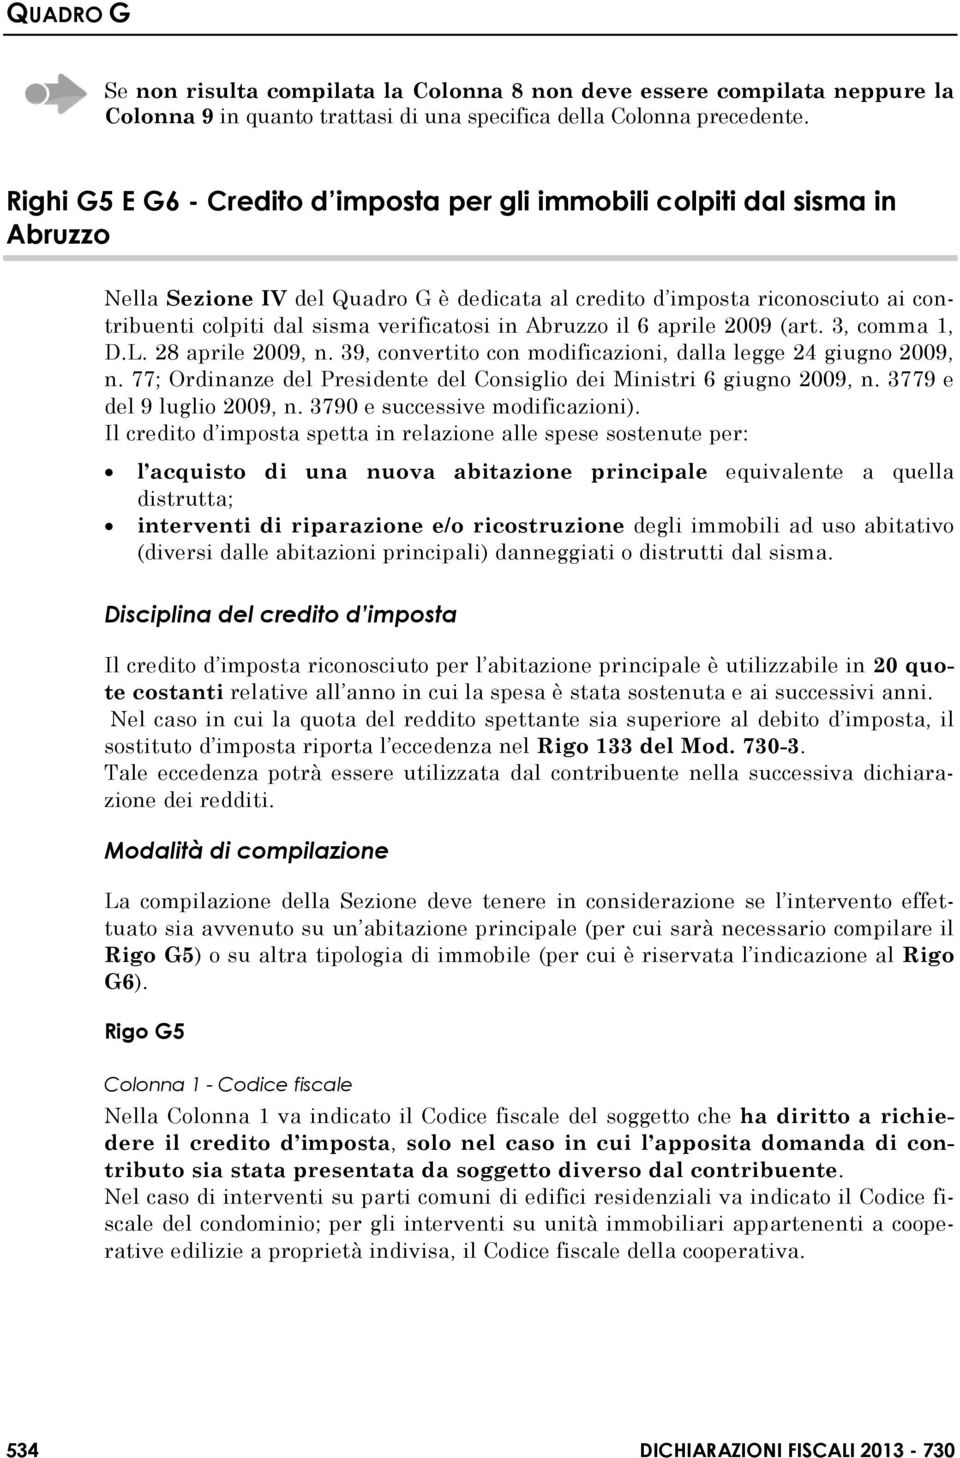 verificatosi in Abruzzo il 6 aprile 2009 (art. 3, comma 1, D.L. 28 aprile 2009, n. 39, convertito con modificazioni, dalla legge 24 giugno 2009, n.